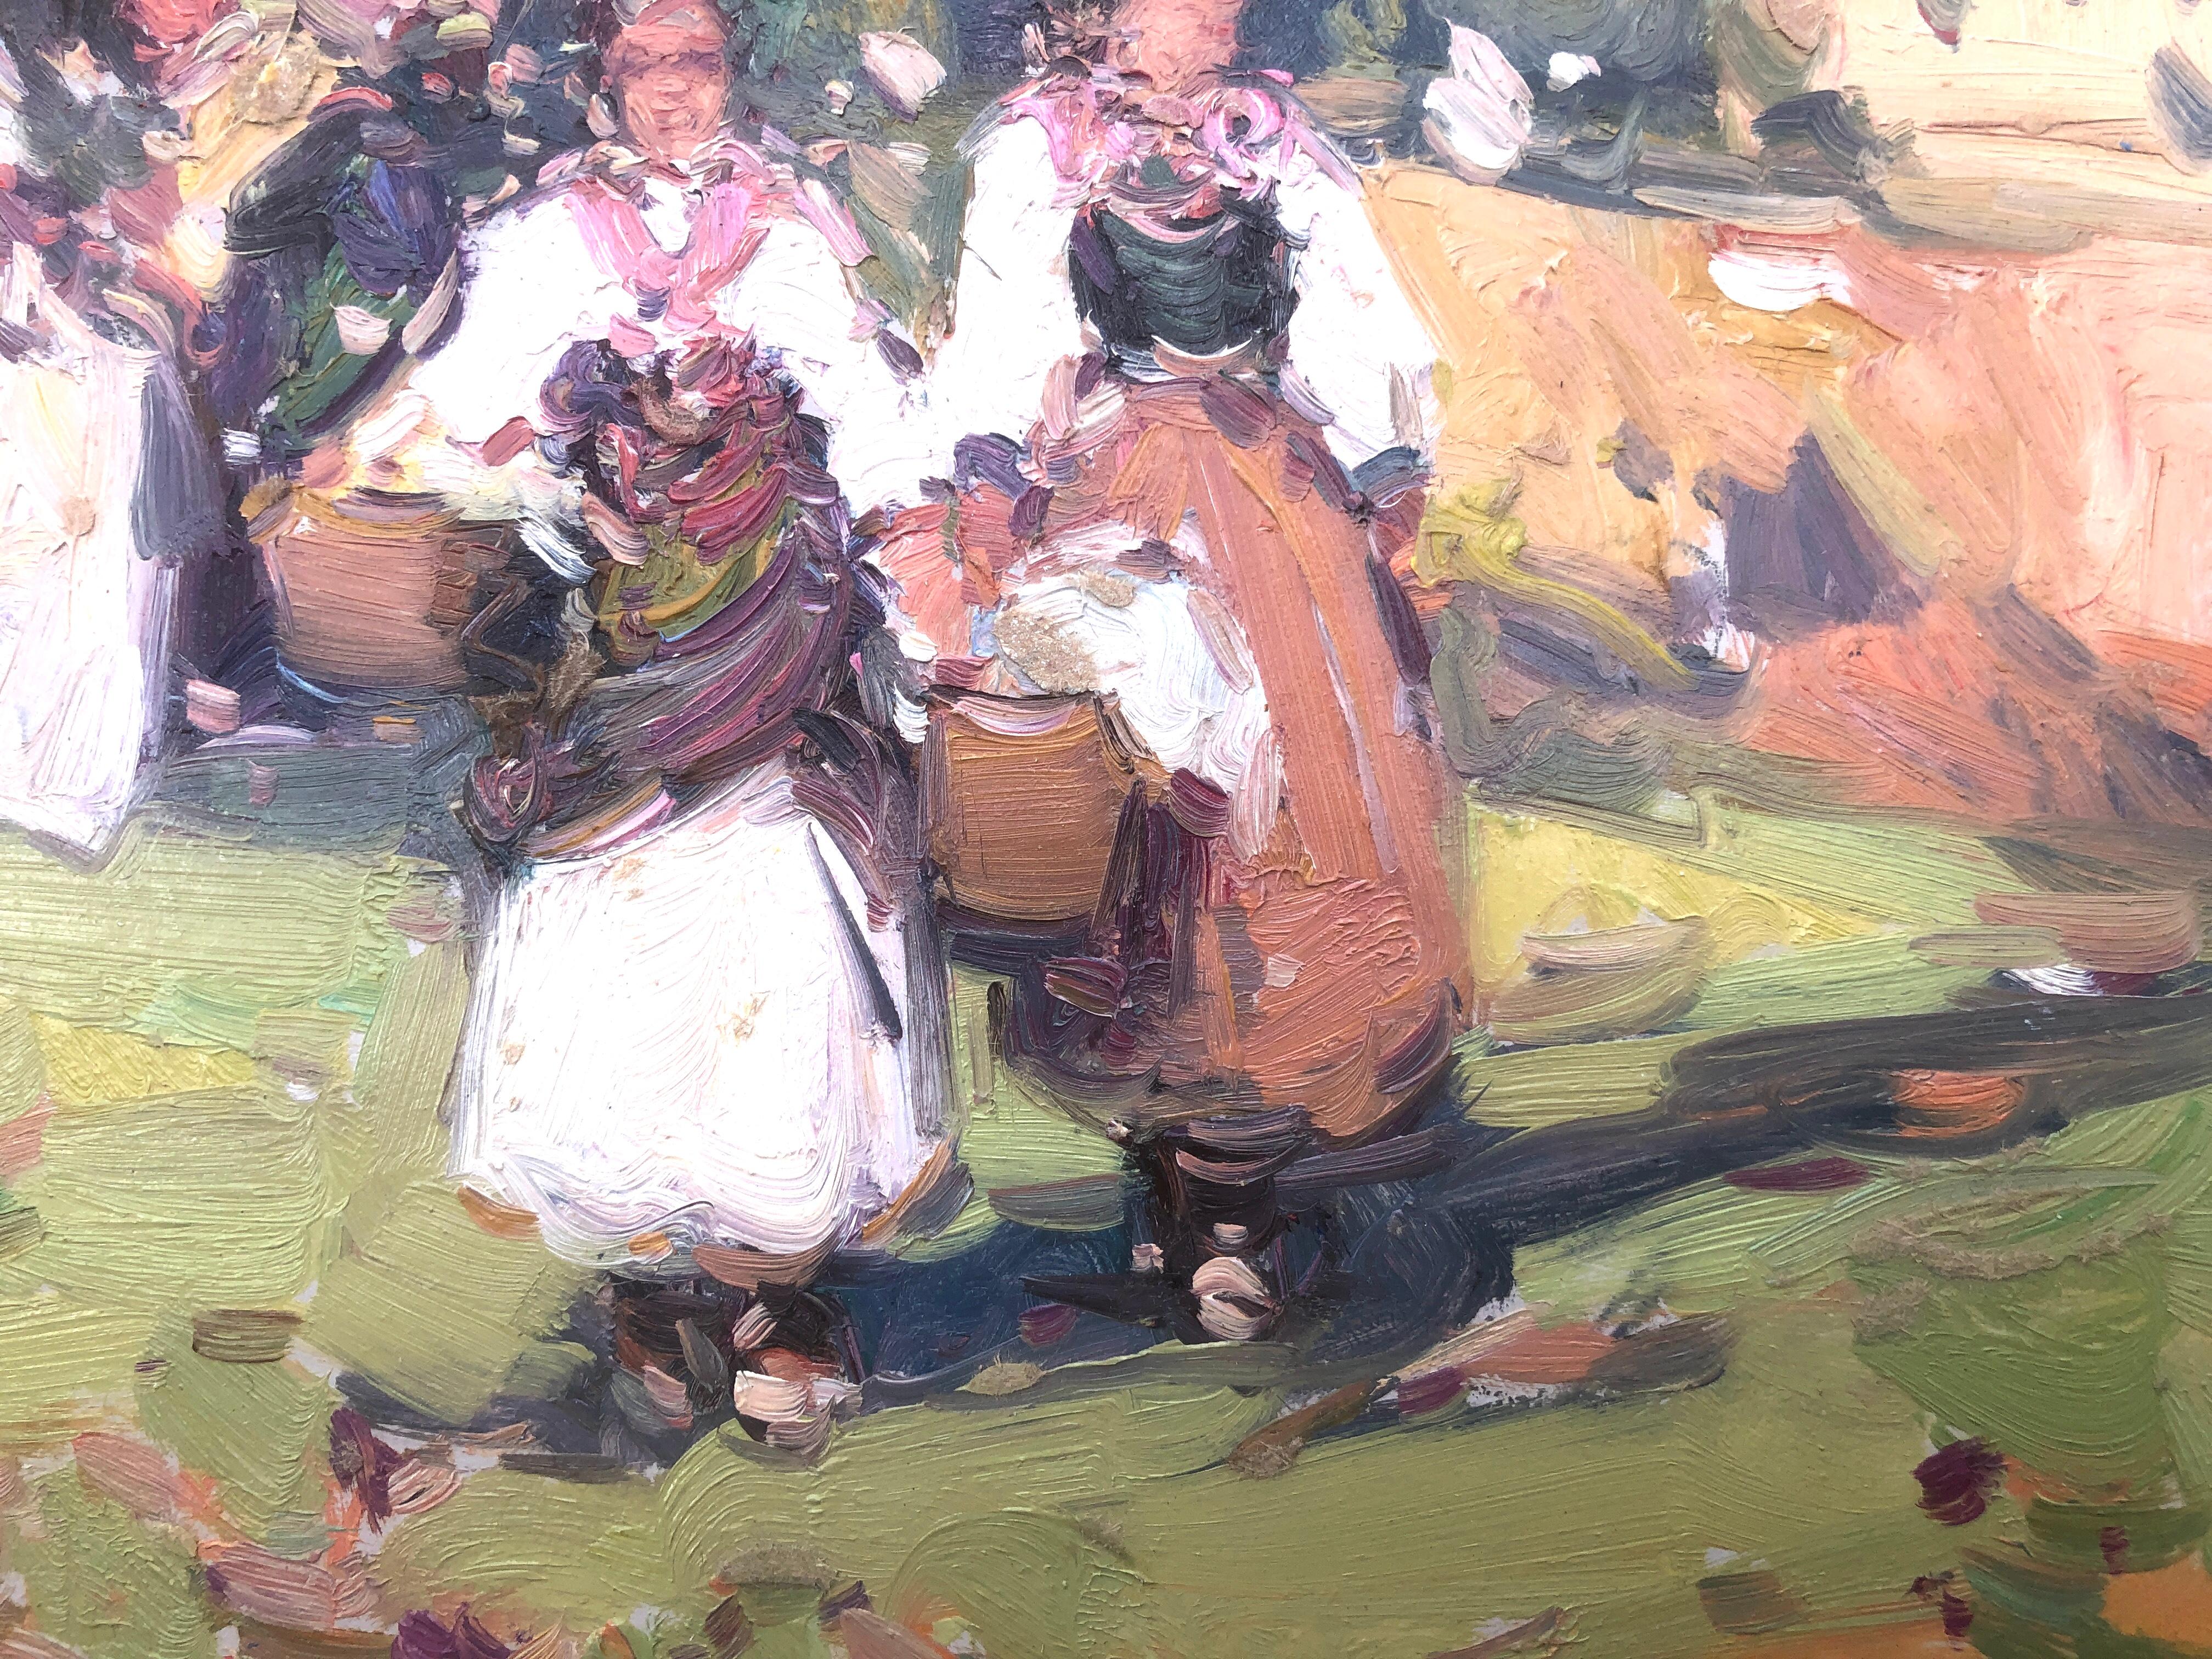 Frauen von Ibiza, Spanien, Ölgemälde auf Karton, Gemälde (Post-Impressionismus), Painting, von Gabriel Casarrubios